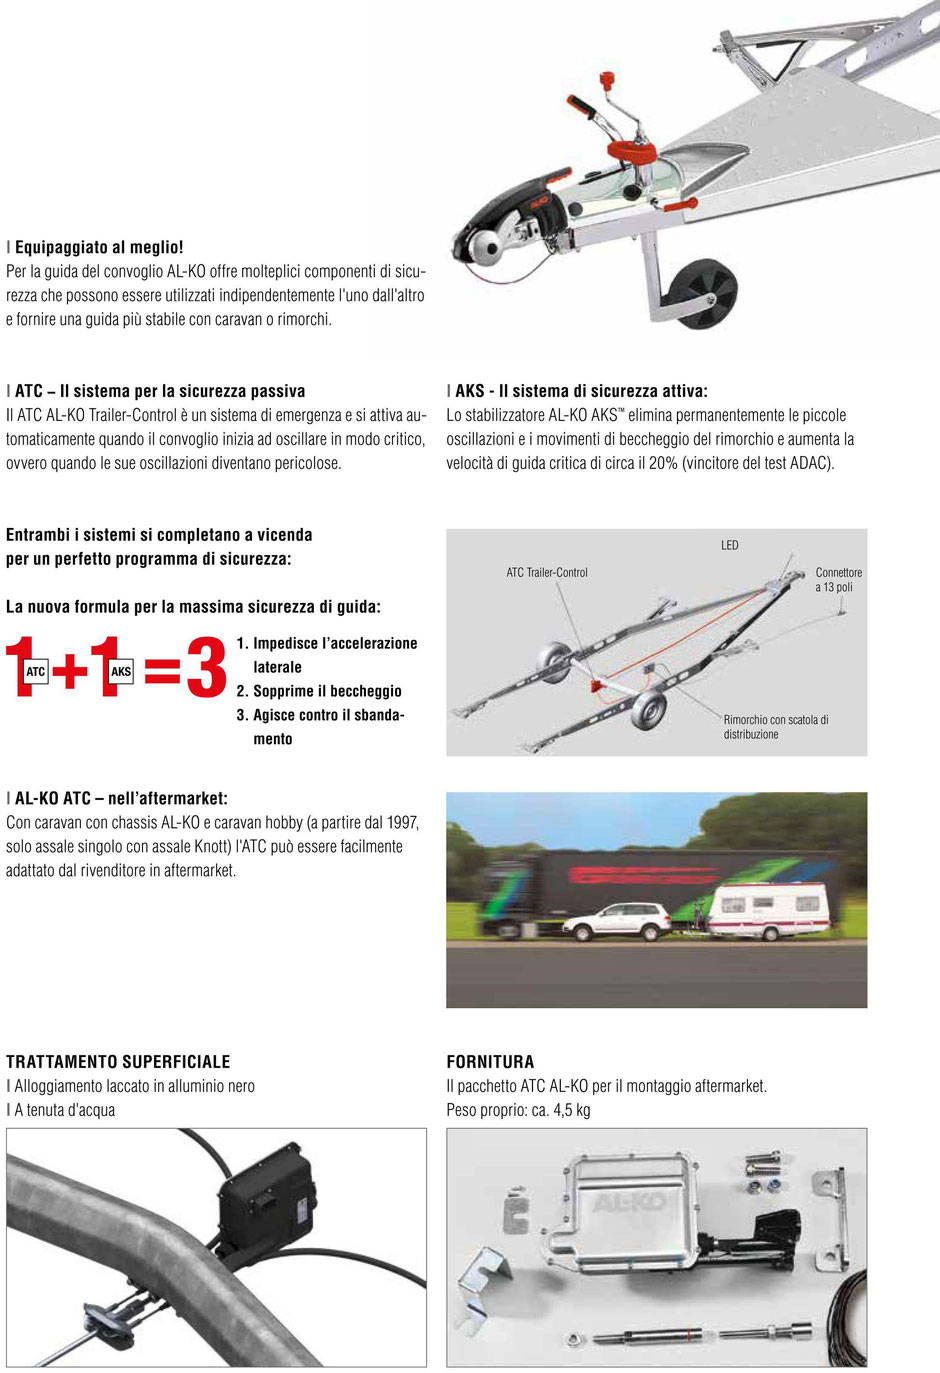 Stabilizzatori ATC Trailer - Control, Sistema antisbandamento Per Caravan e Rimorchi, Descrizione 2